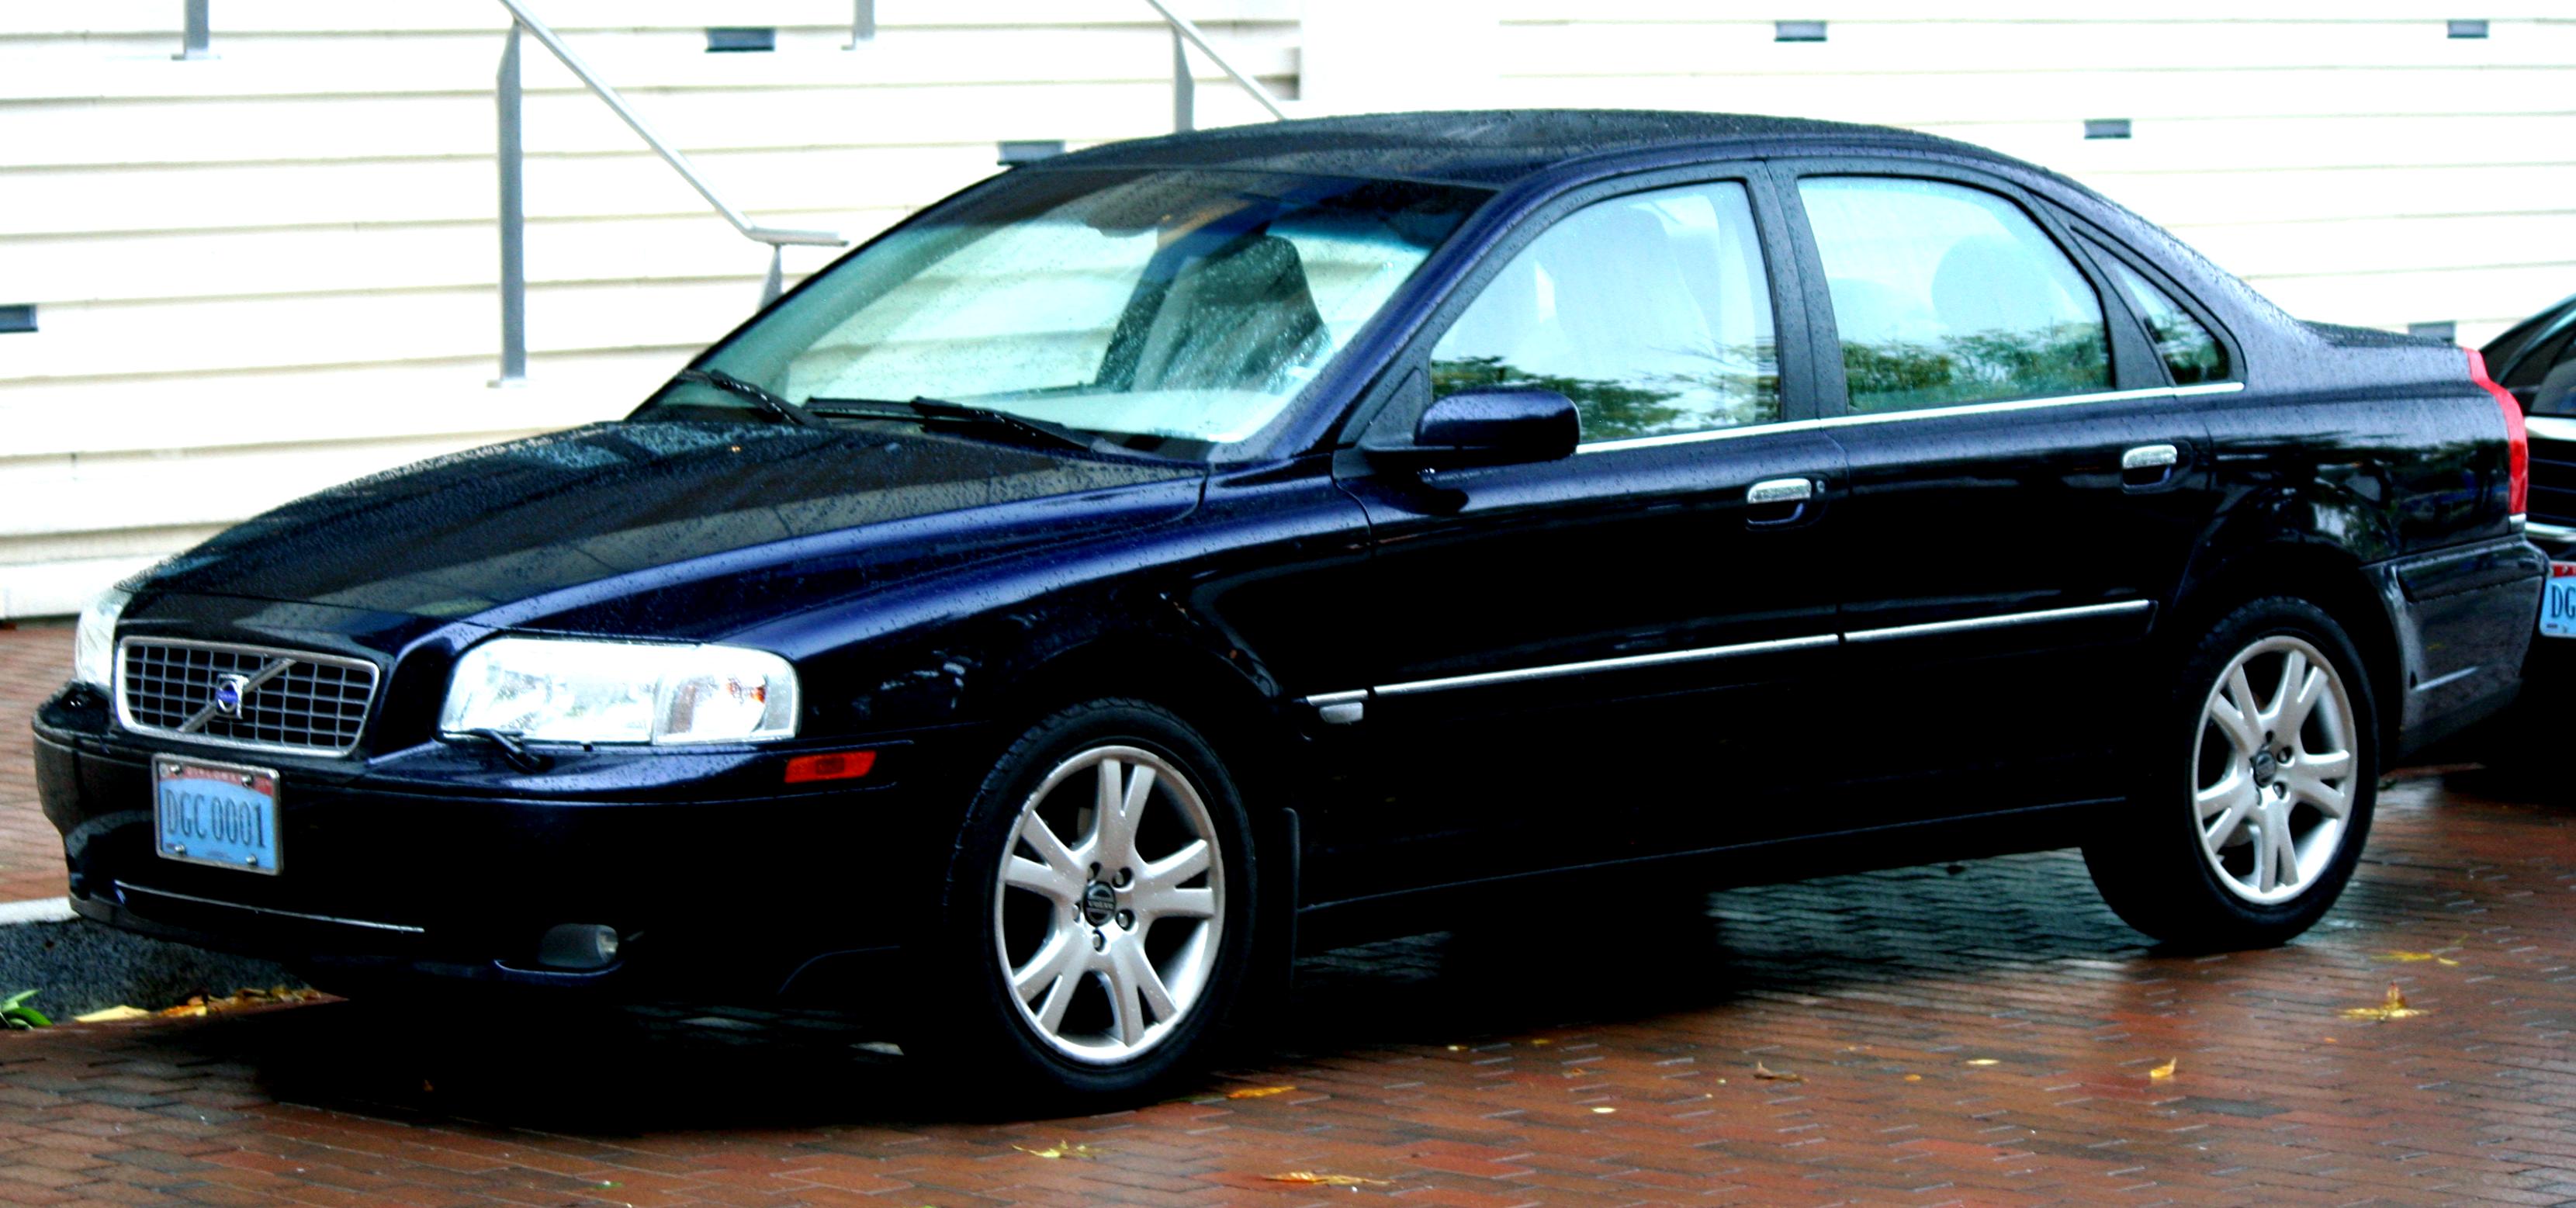 Volvo s80 2004. Volvo s80 2005. Вольво s80 1. Вольво s80 2006. Volvo s80 2003.